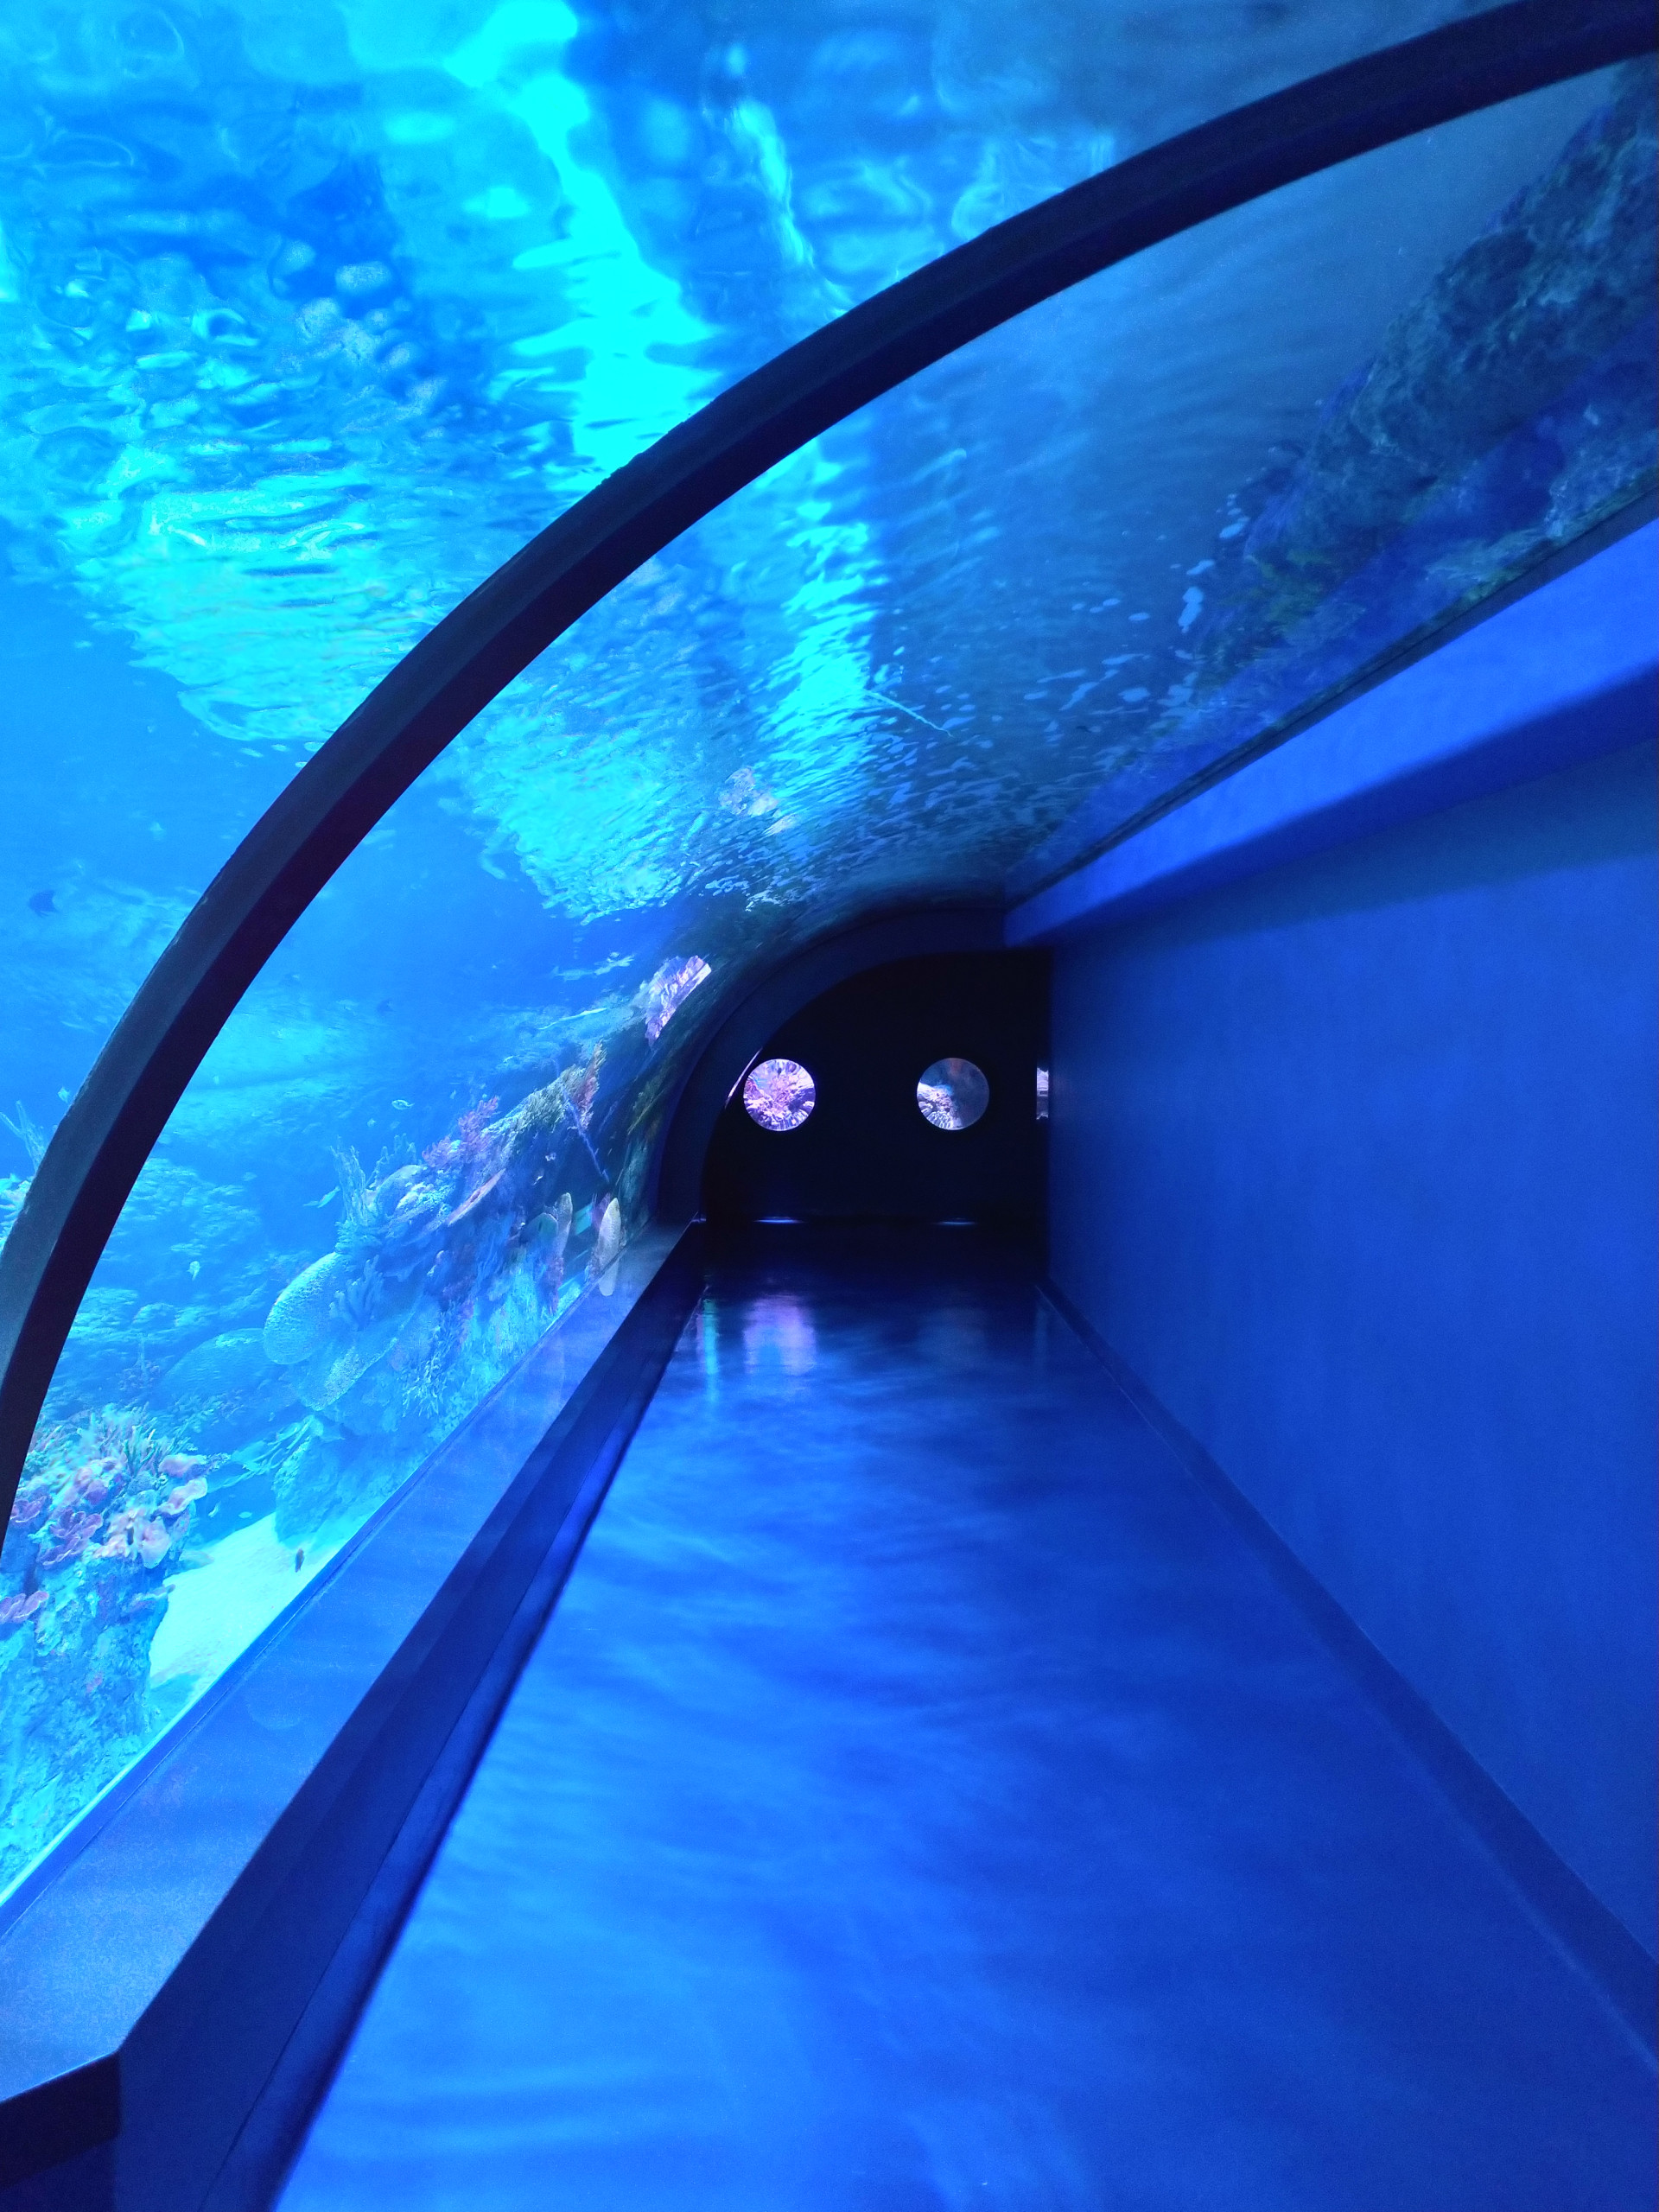 Goldenhall Aquarium - Athens, Greece